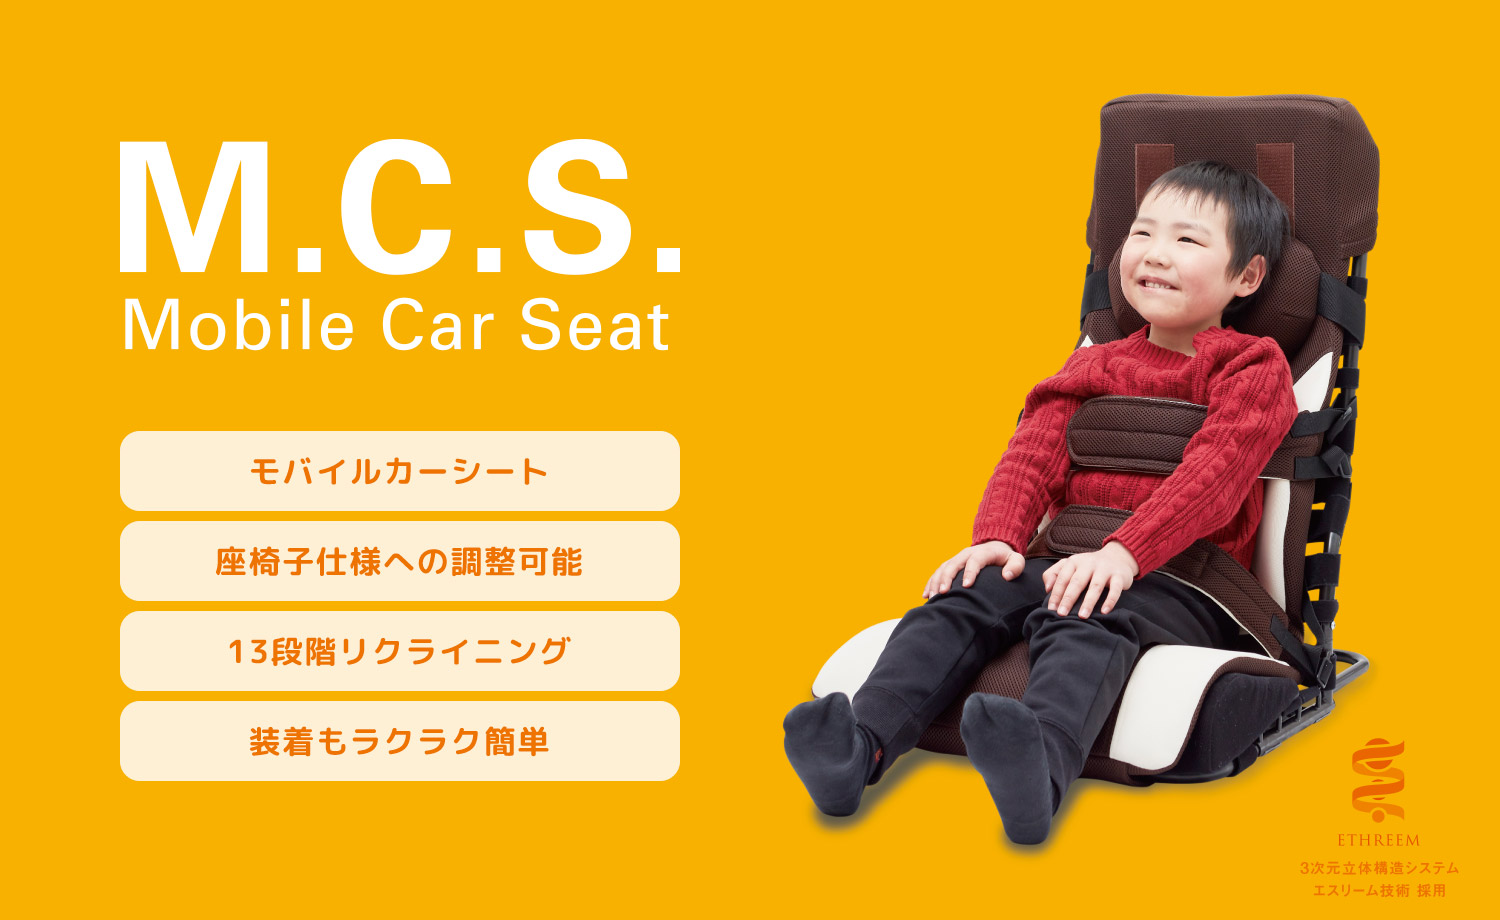 Mobile Car Seat（M.C.S. モバイルカーシート） 【株式会社ピーエーエス】